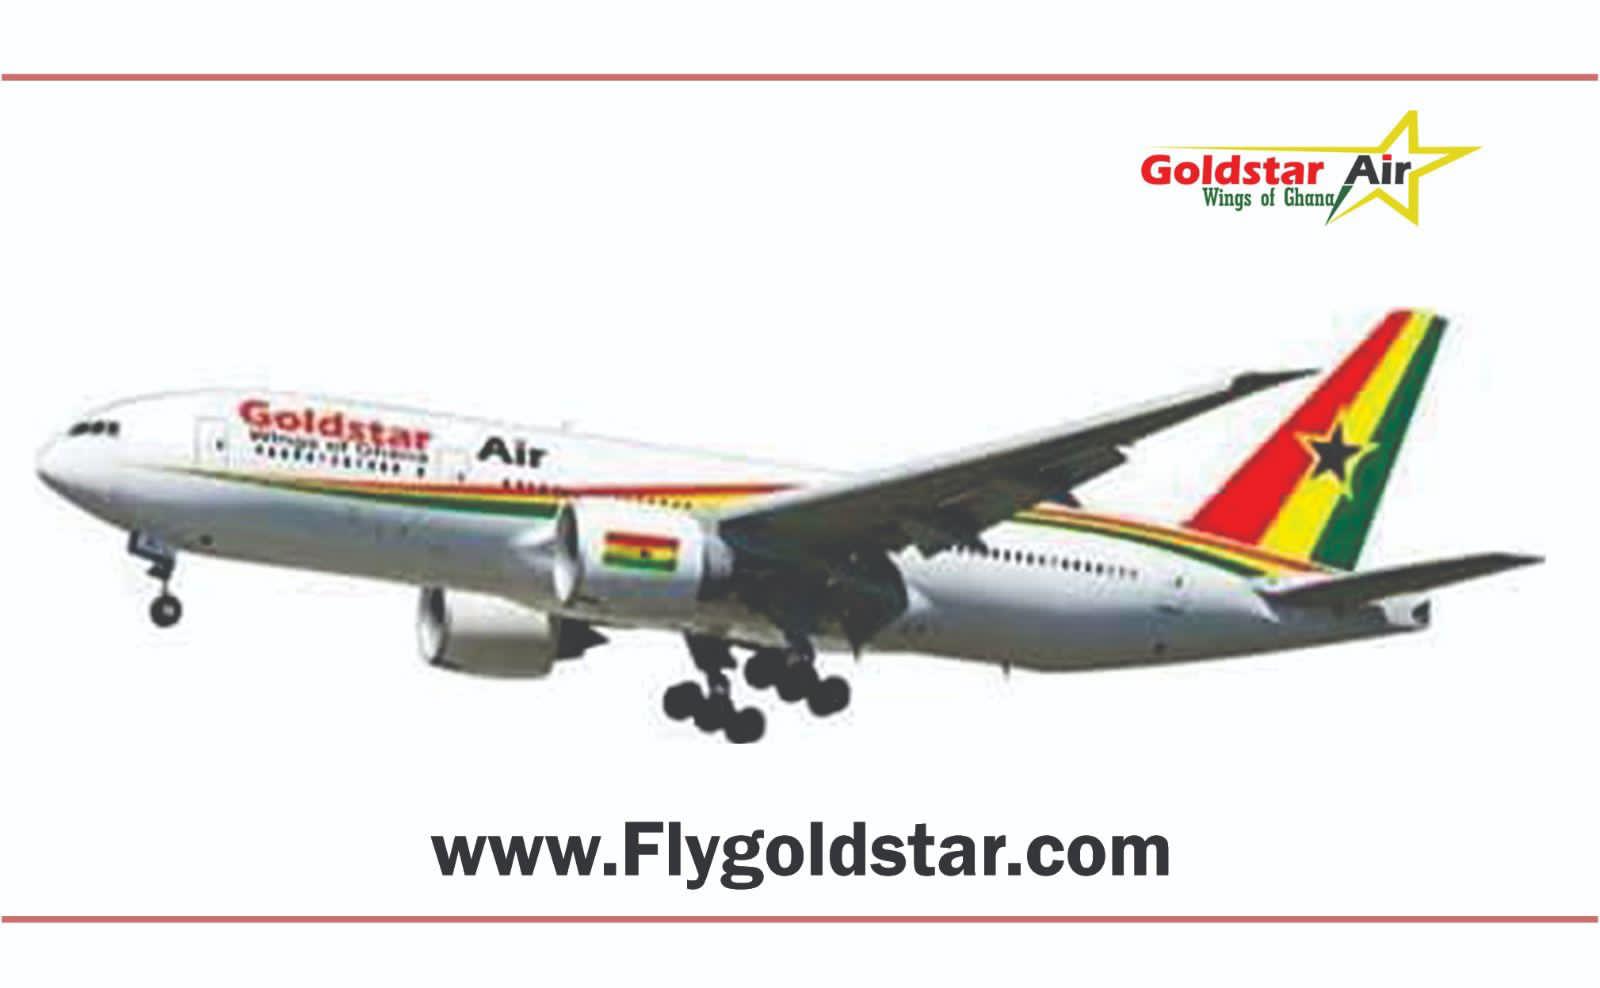 Goldstar Air to commence Afrik Allianz seeking endorsement of African Union